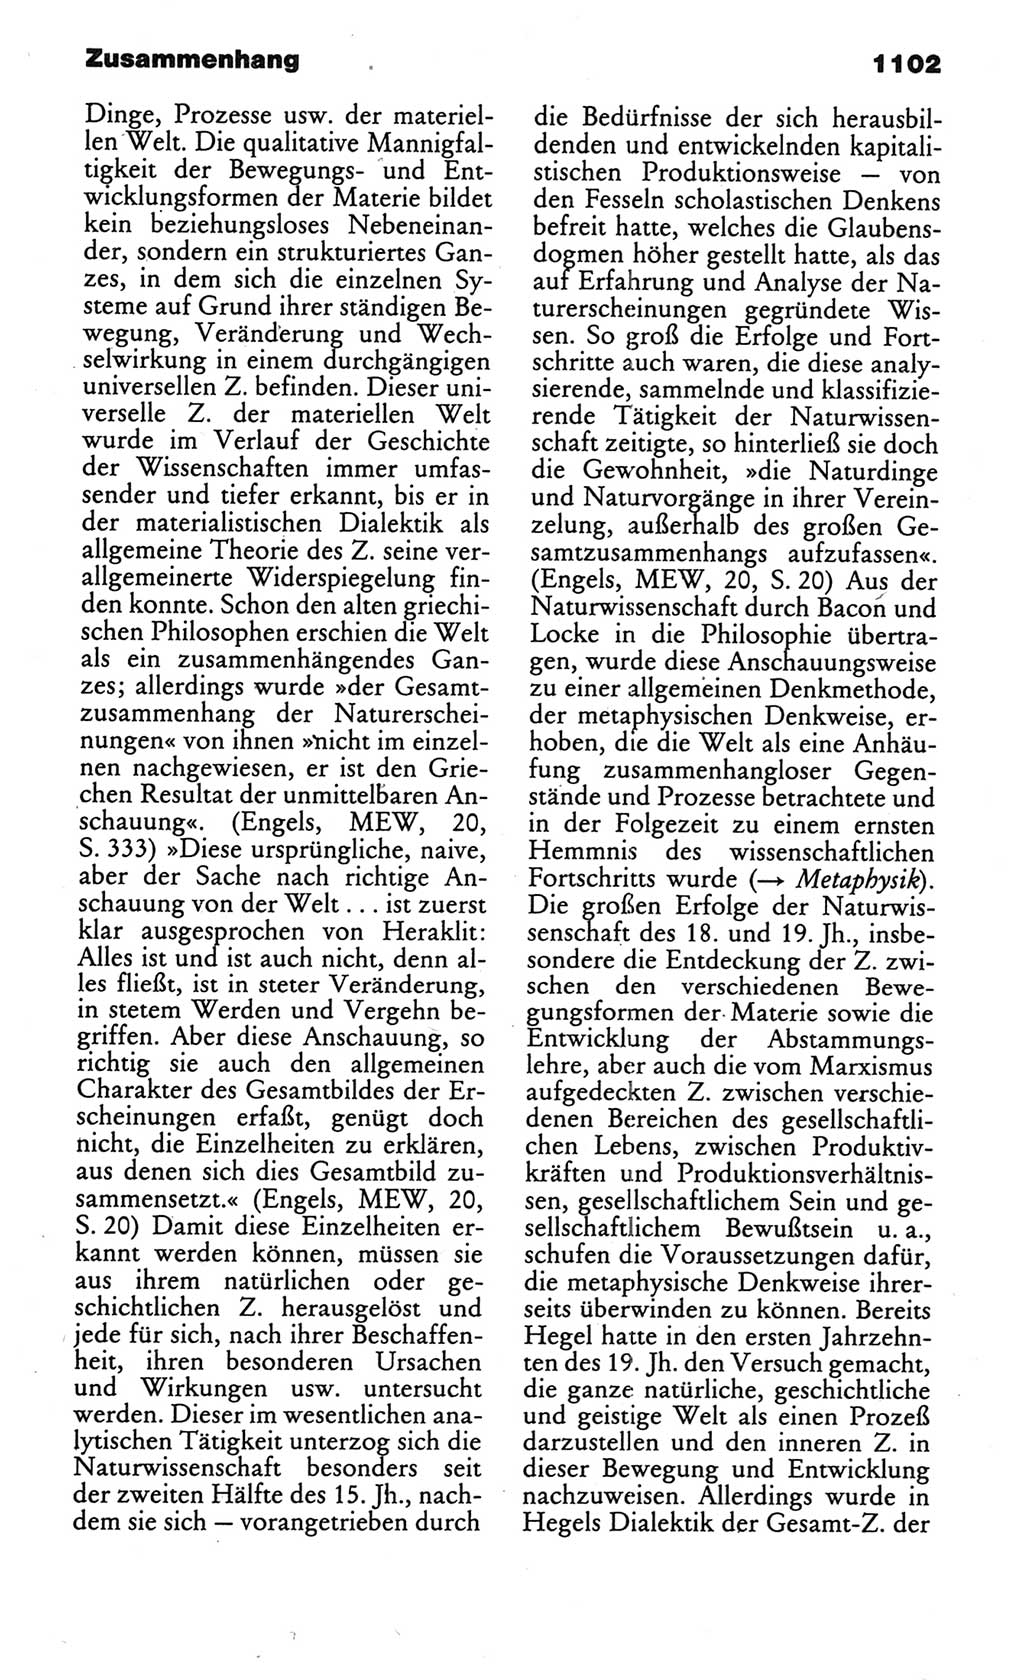 Kleines politisches Wörterbuch [Deutsche Demokratische Republik (DDR)] 1986, Seite 1102 (Kl. pol. Wb. DDR 1986, S. 1102)